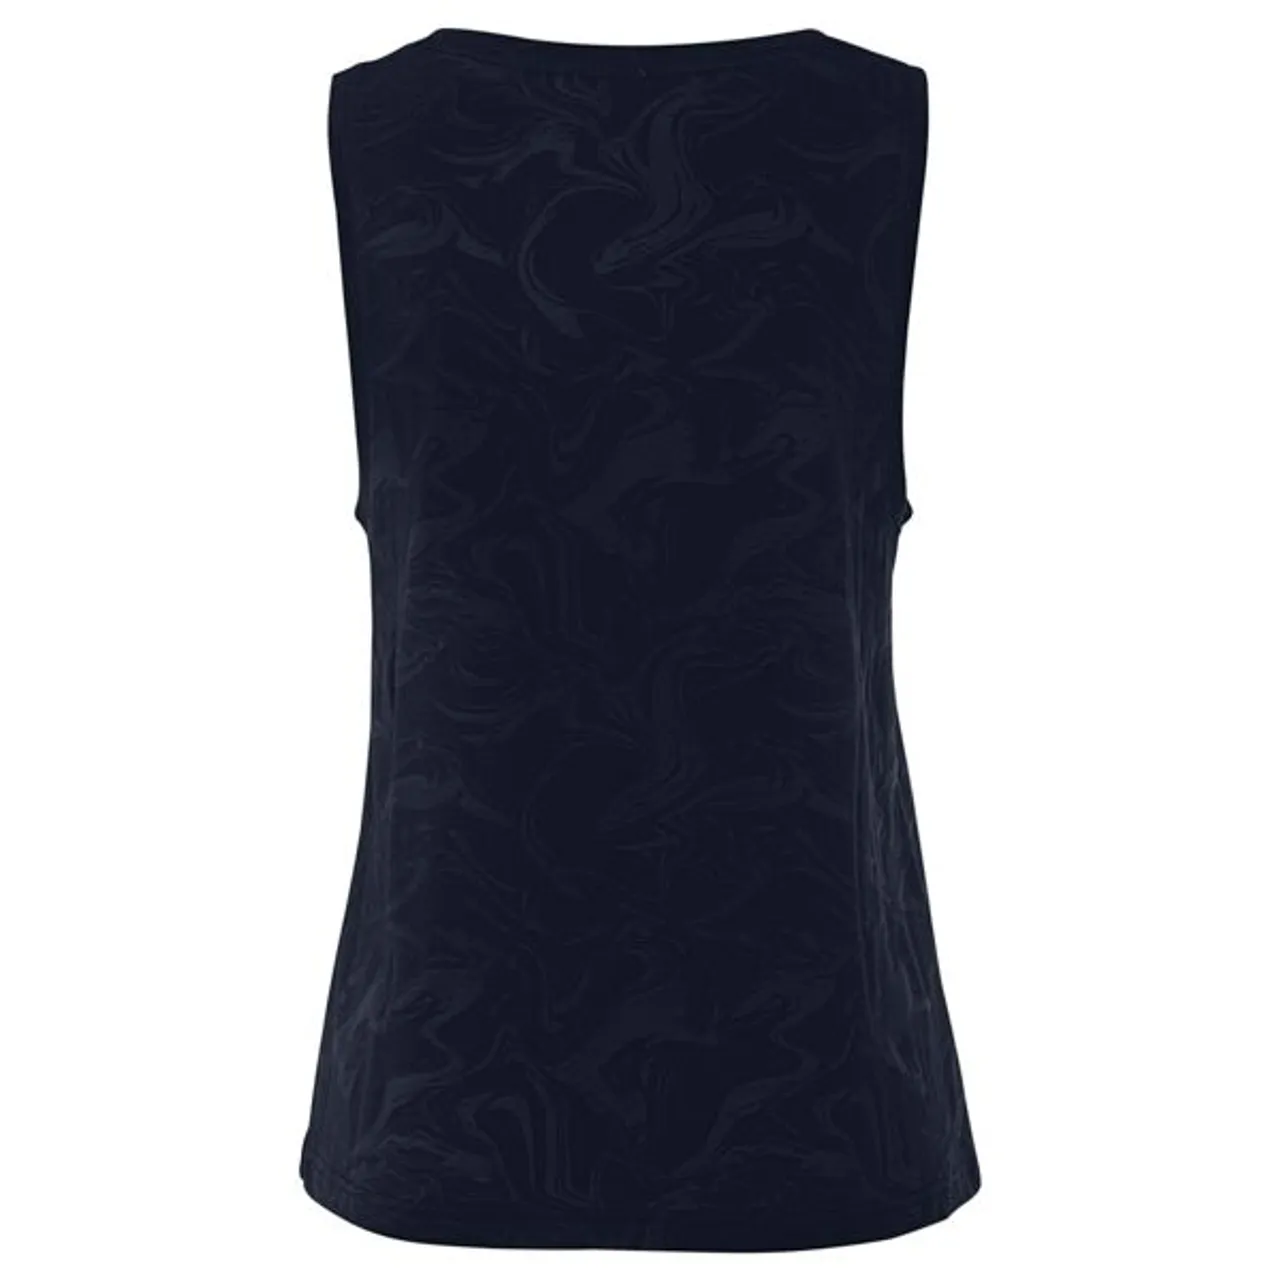 Funktionsshirt LASCANA ACTIVE "-Sportshirt" Gr. XS (32/34), schwarz Damen Shirts Funktionsshirts mit Rundhalsausschnitt und Logodruck